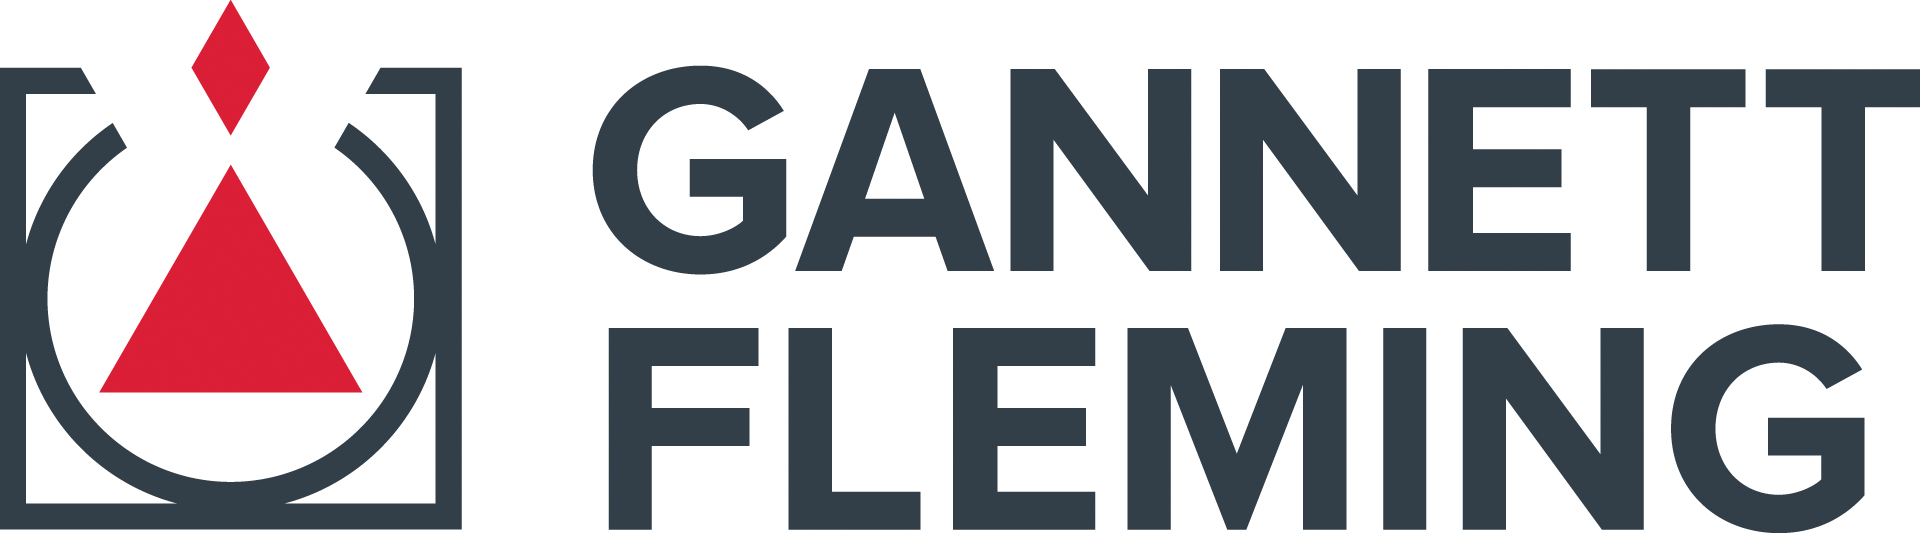 Gannett Fleming New Logo